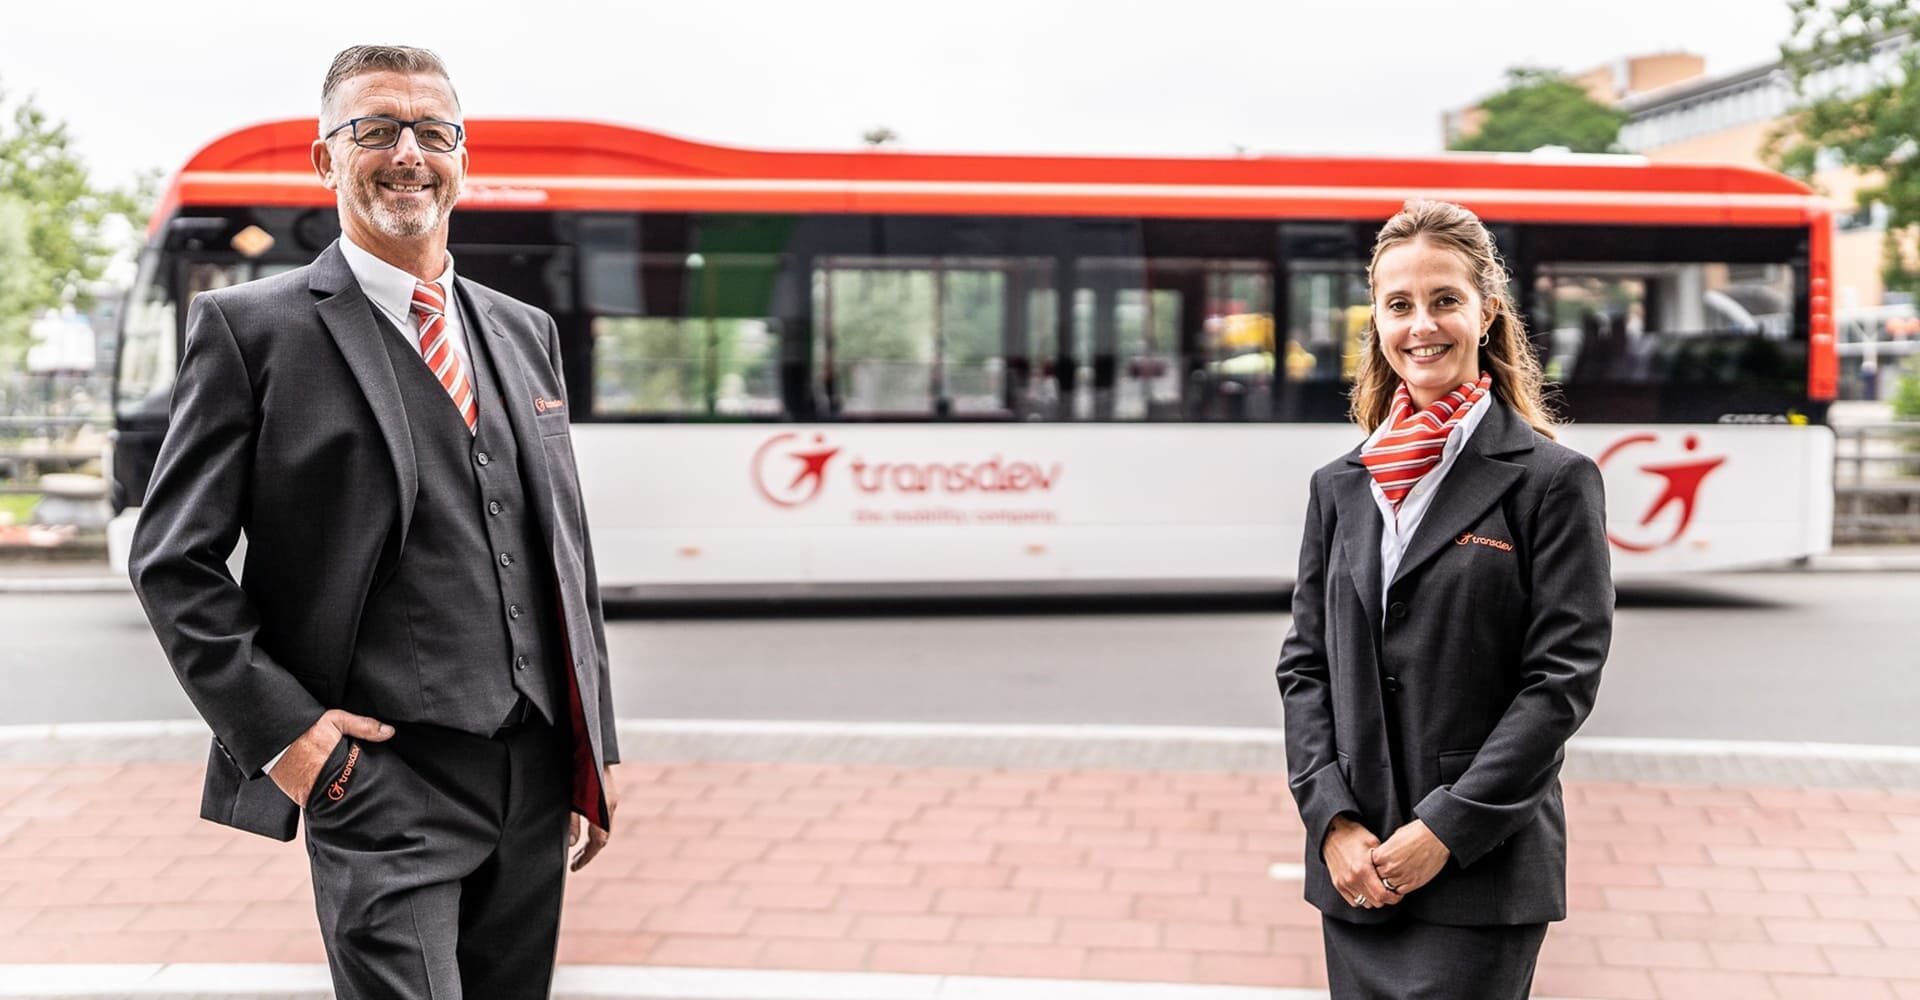 2 collaborateurs de la société transdev posant pour une photo devant un bus